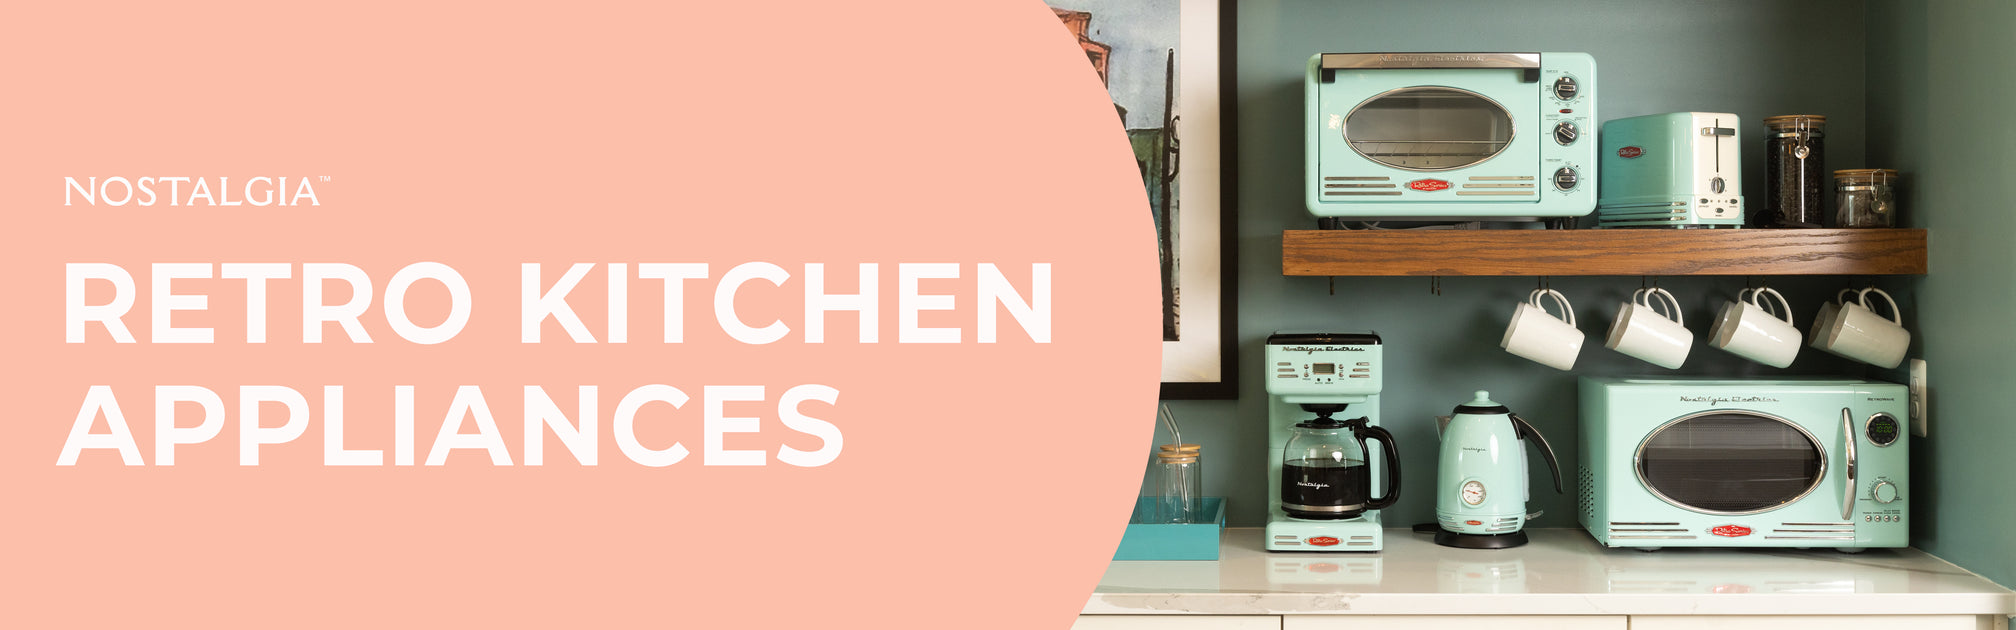 Nostalgia  Retro Kitchen Appliances — Nostalgia Products